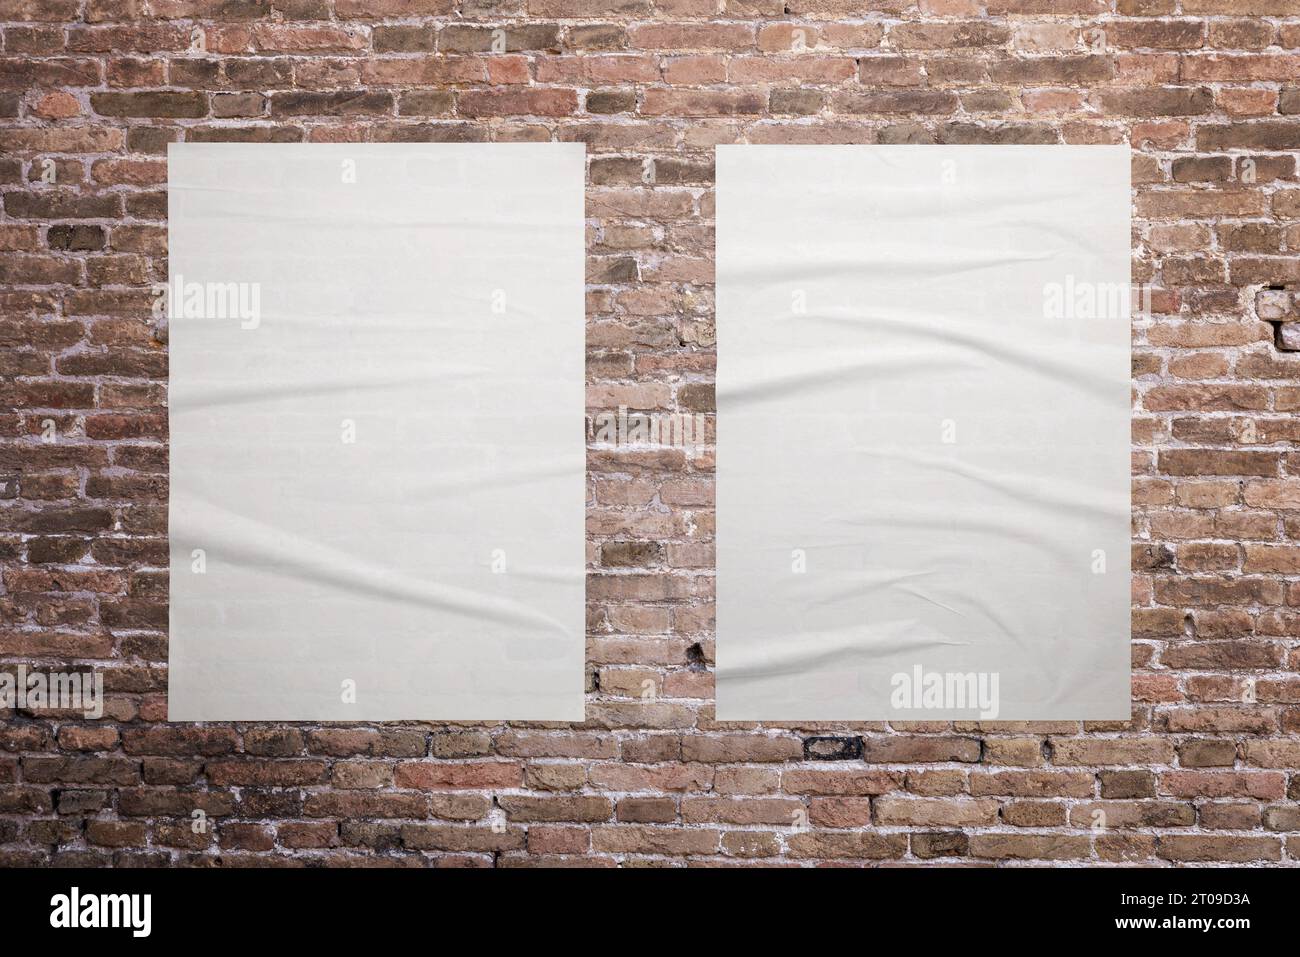 Zwei leere, weiße A3-Poster sind an der Ziegelwand geklebt. Ideale Oberflächen für die Werbeaktion mit Grafikdesign Stockfoto